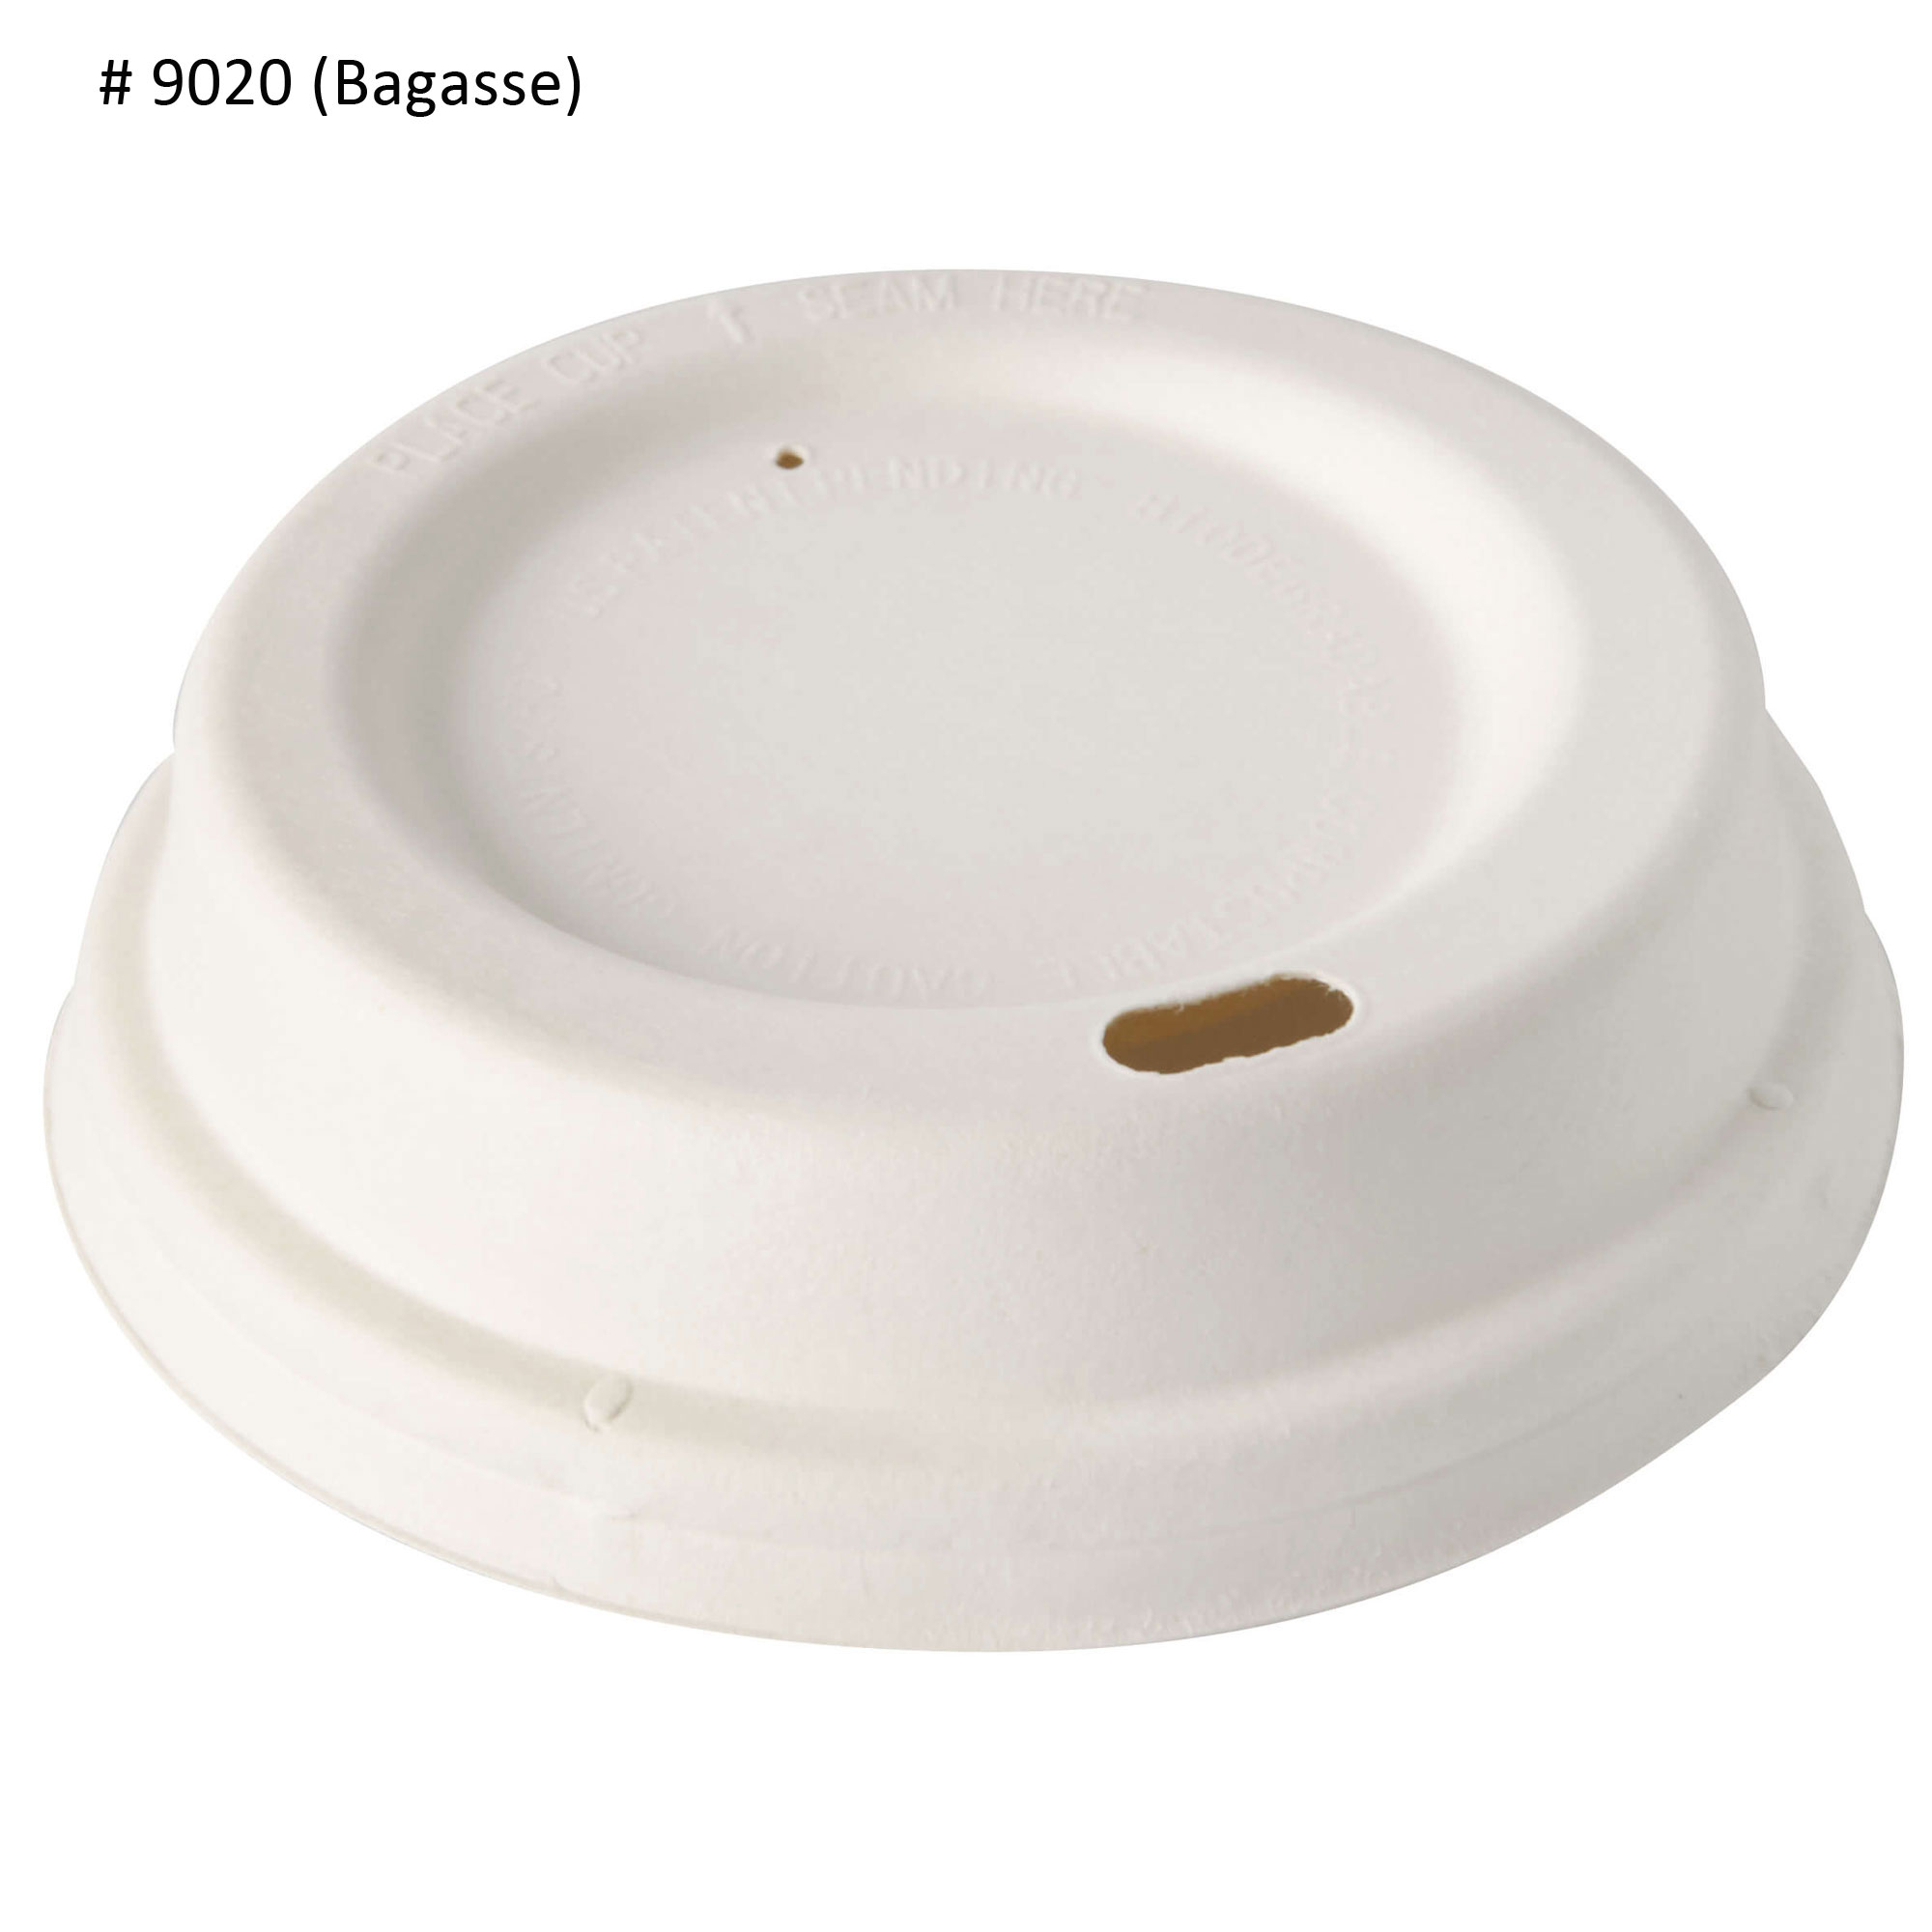 Deckel für Espressobecher, Plastik weiß - 6cm (50 Stk.)